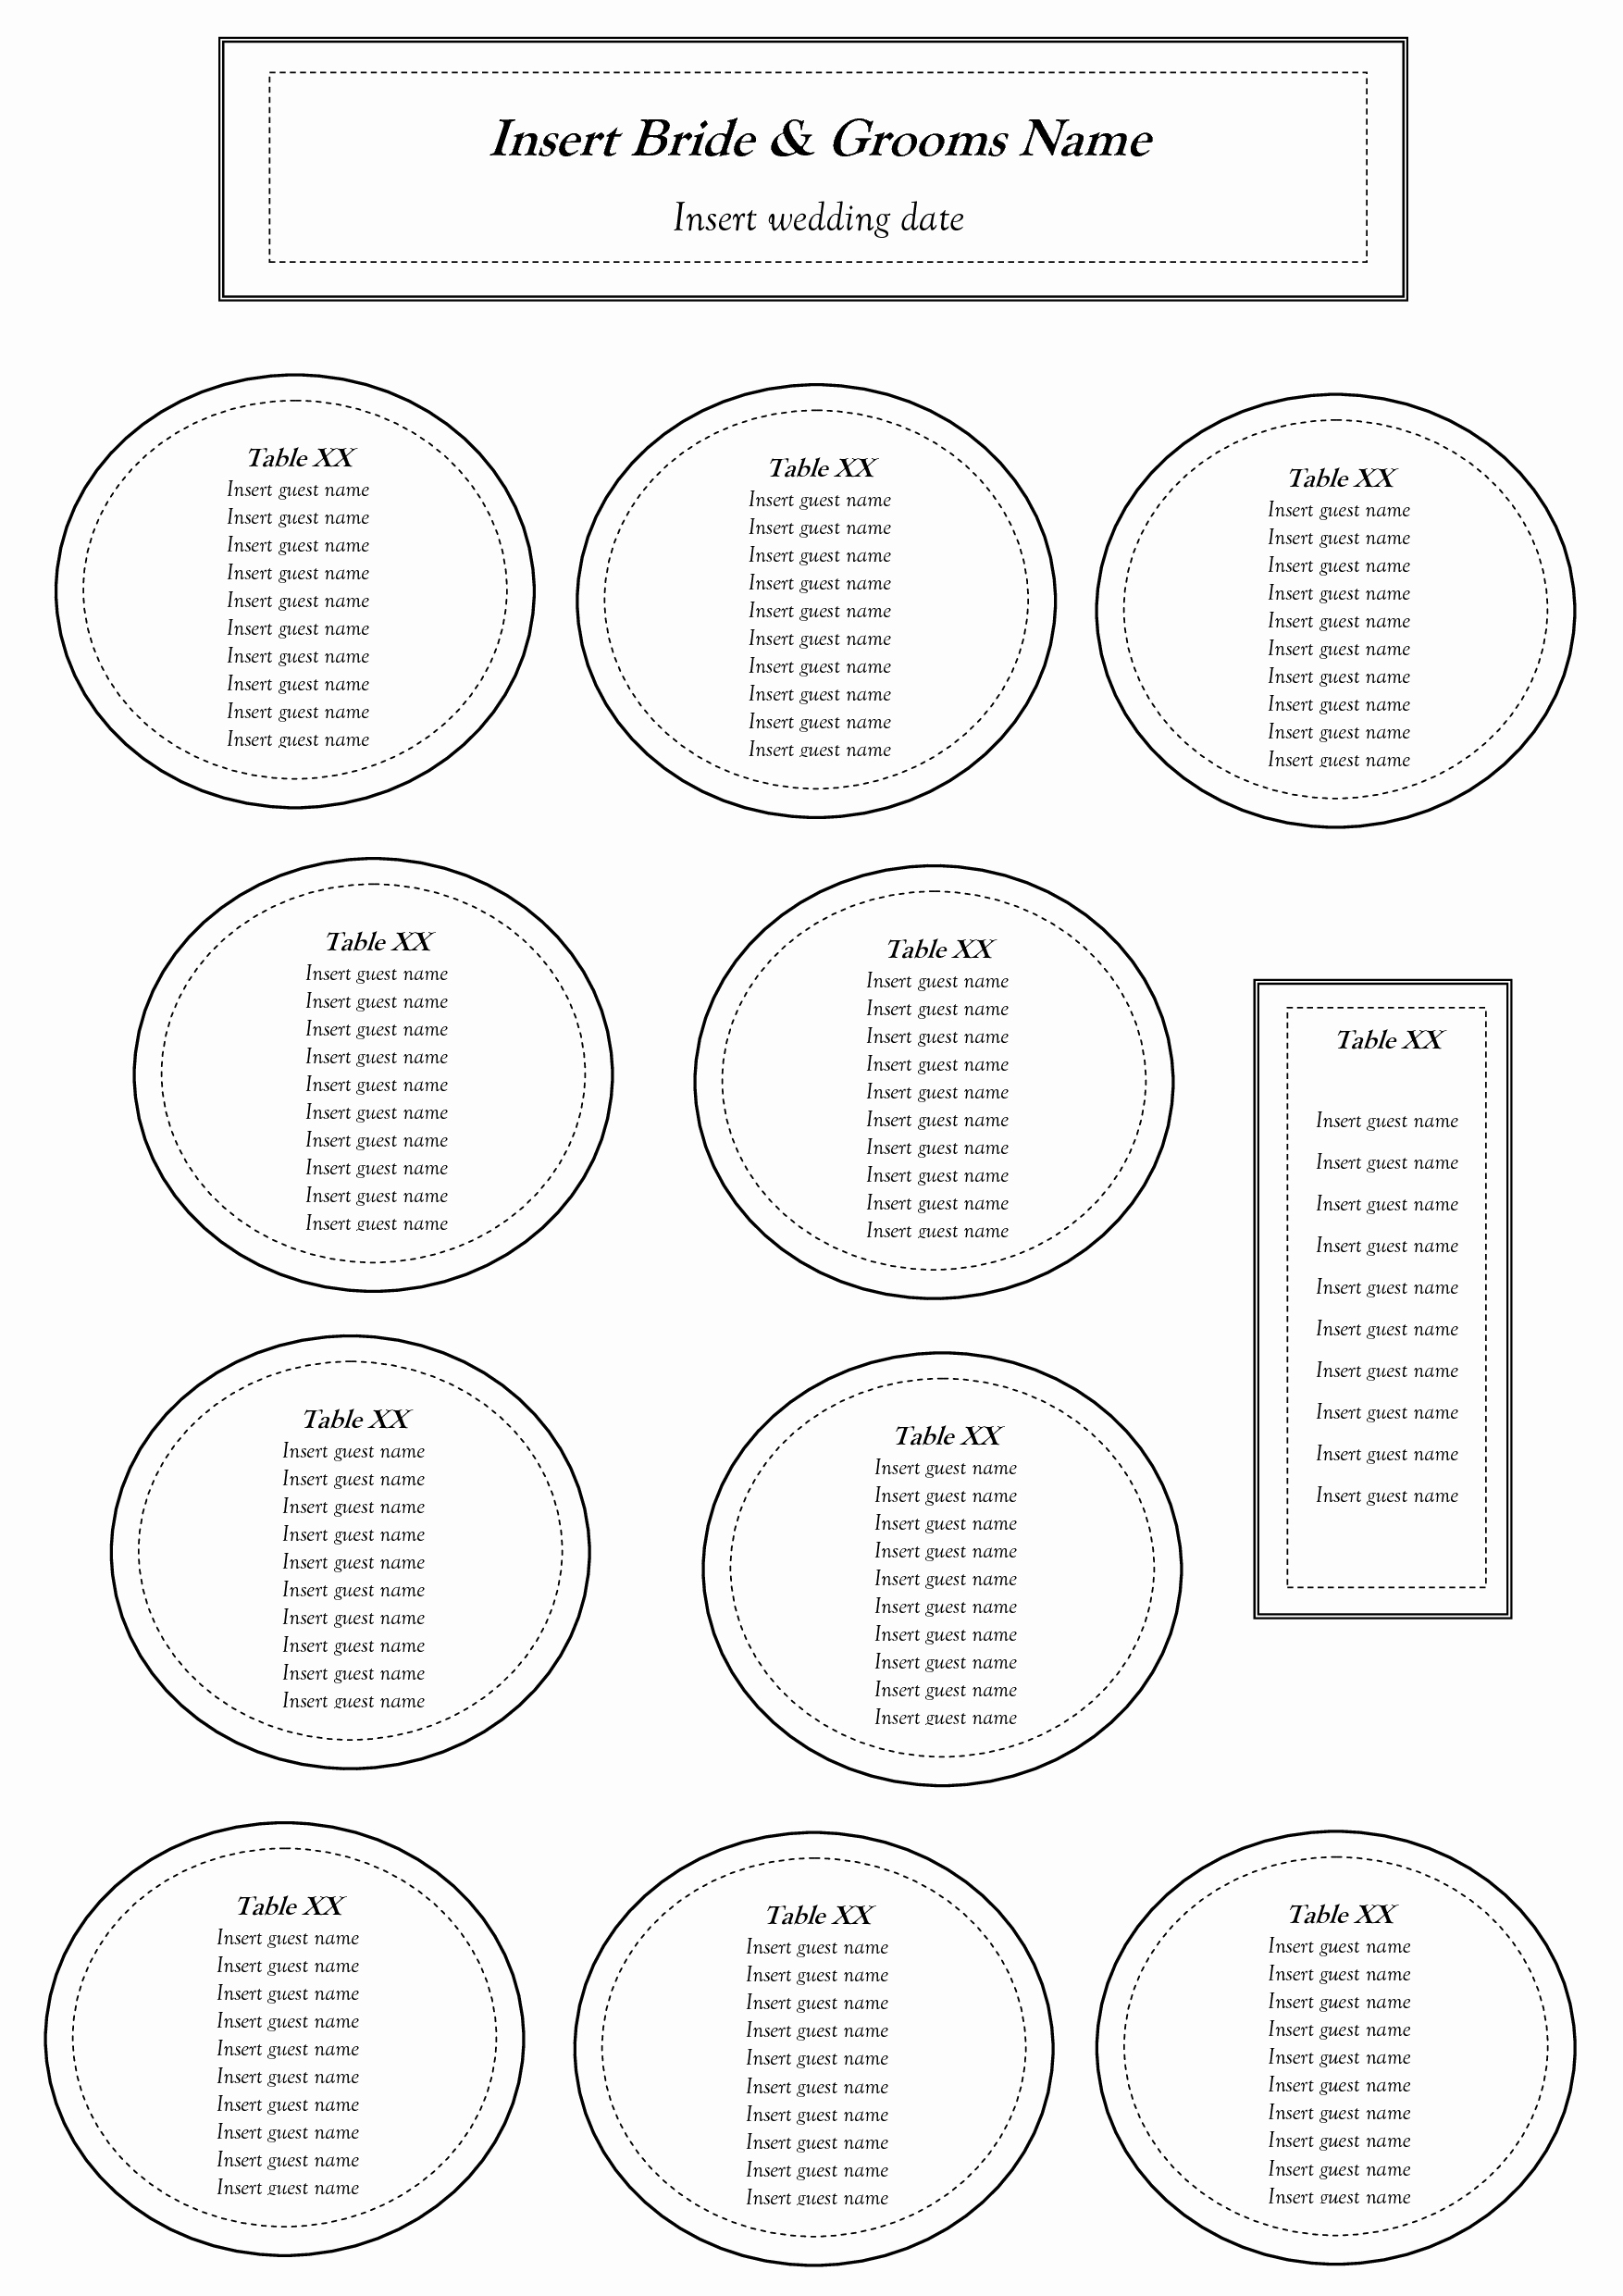 Printable Wedding Seating Chart Template New Free Table Seating Chart Template